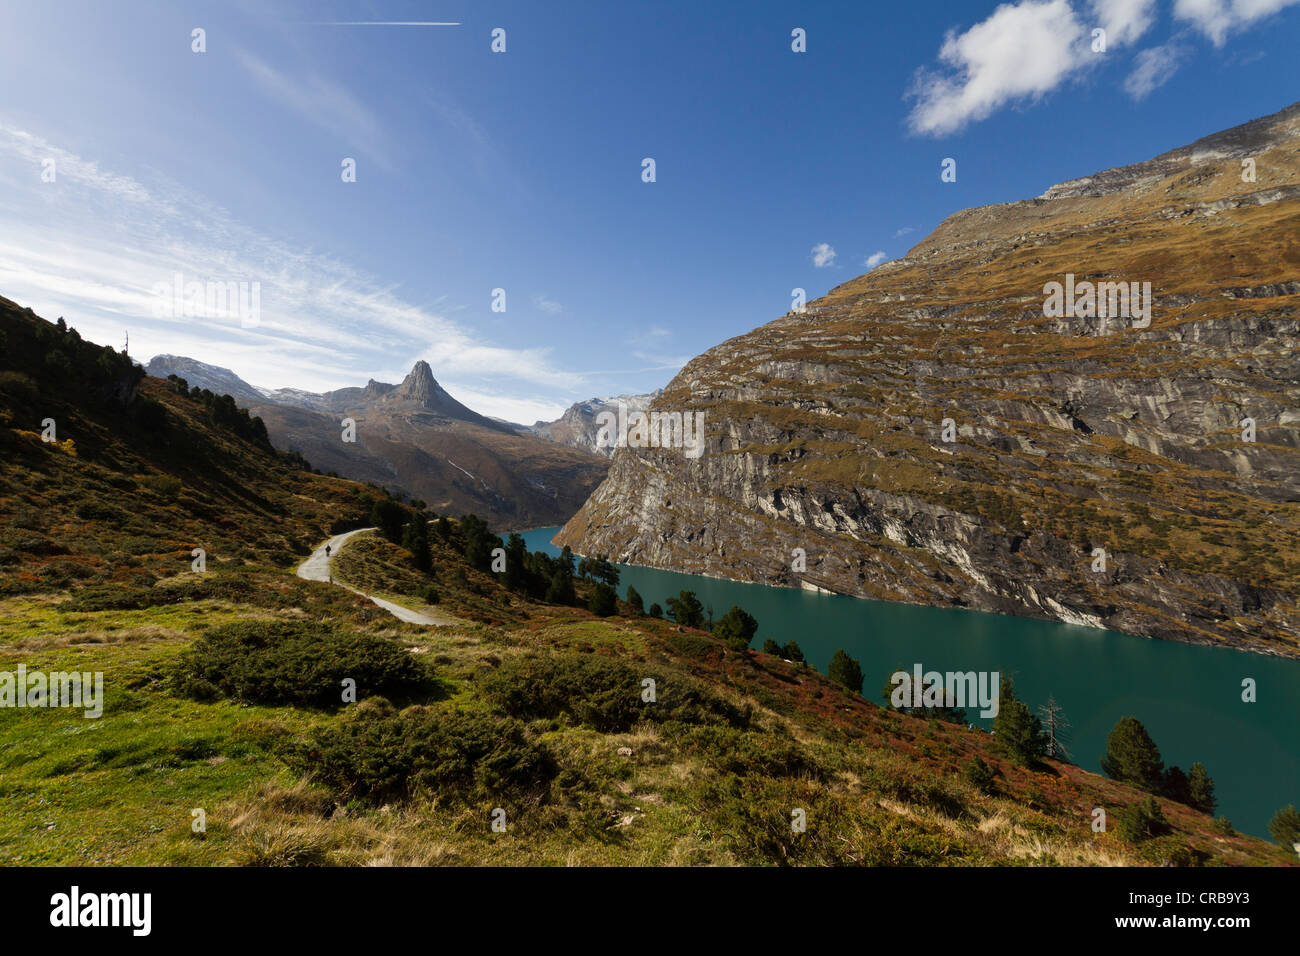 Mt. Zervreilahorn with Zervreilasee storage lake, Vals, Canton Grisons, Switzerland, Europe Stock Photo